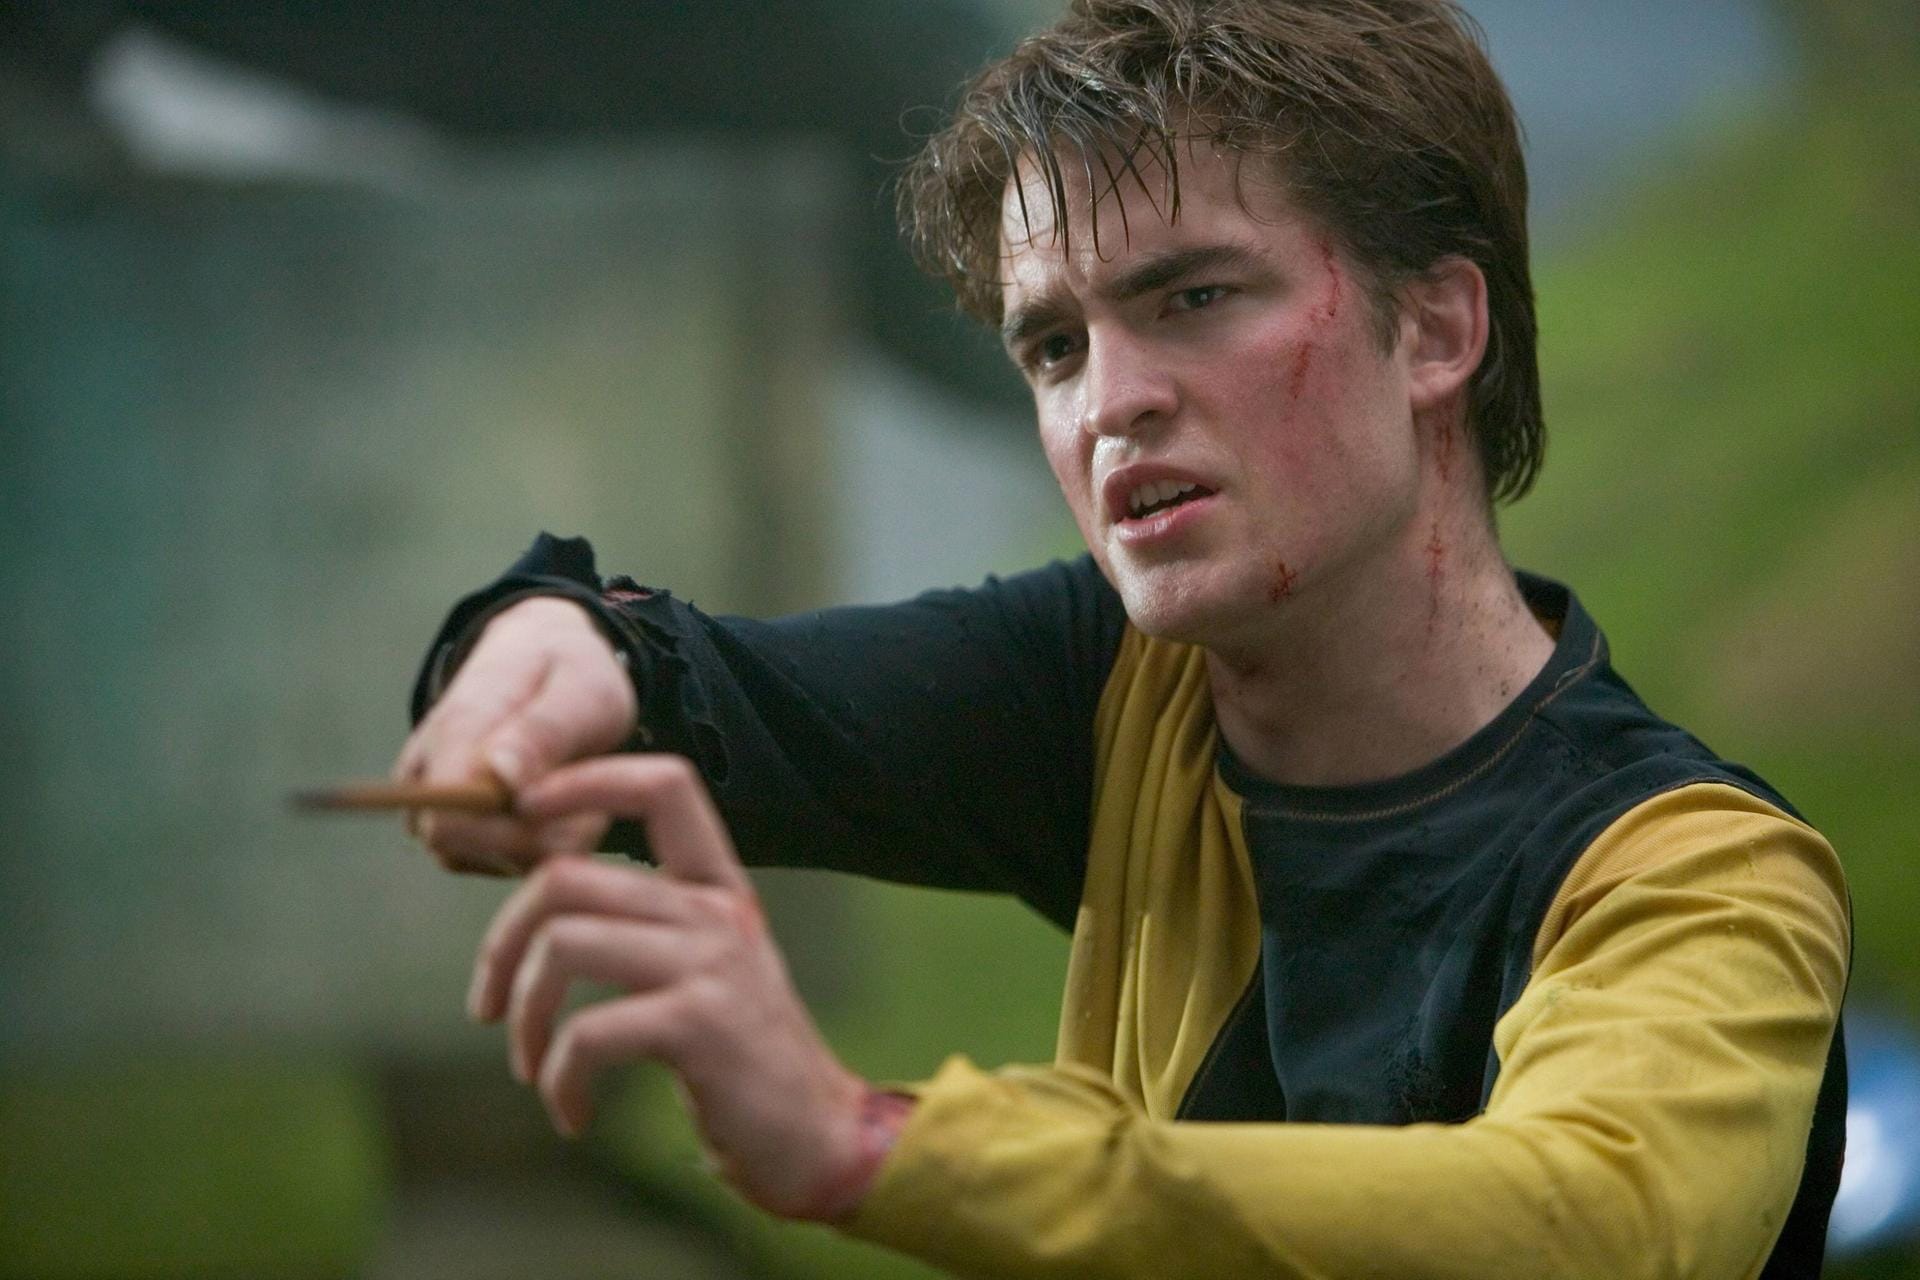 Robert Pattinson war nur im viertel Teil der Zauberersaga zu sehen. Der Schauspieler verkörperte in "Harry Potter und der Feuerkelch" Cedric Diggory, der mit Harry das Trimagische Turnier gewann und durch Voldemort getötet wurde.